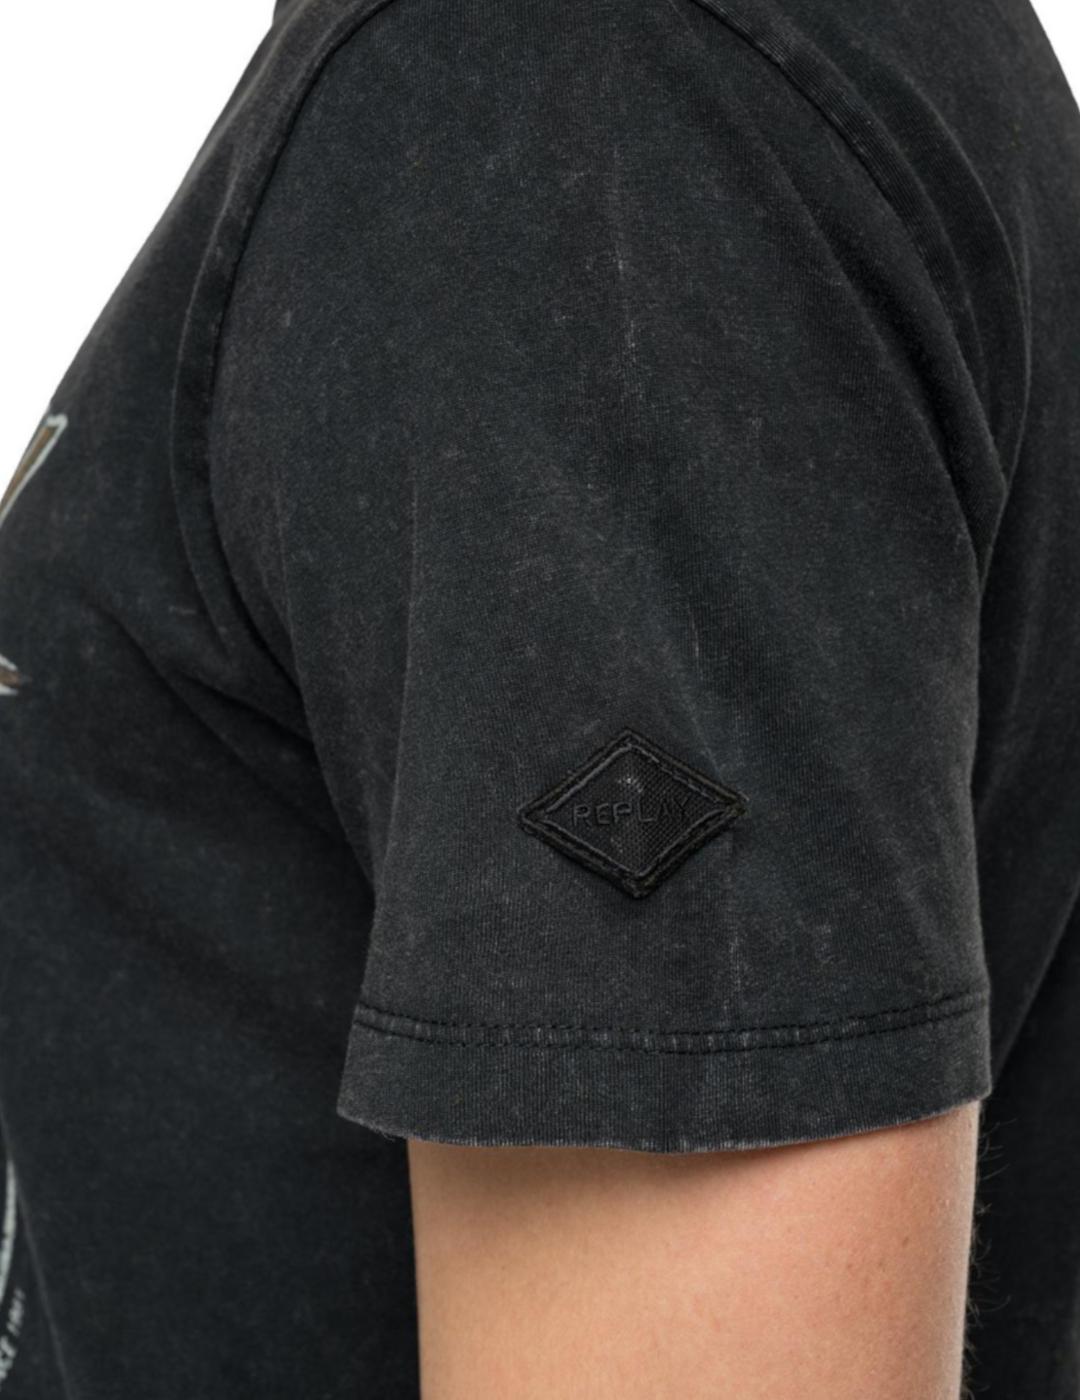 Camiseta Replay negra lavada para hombre-z